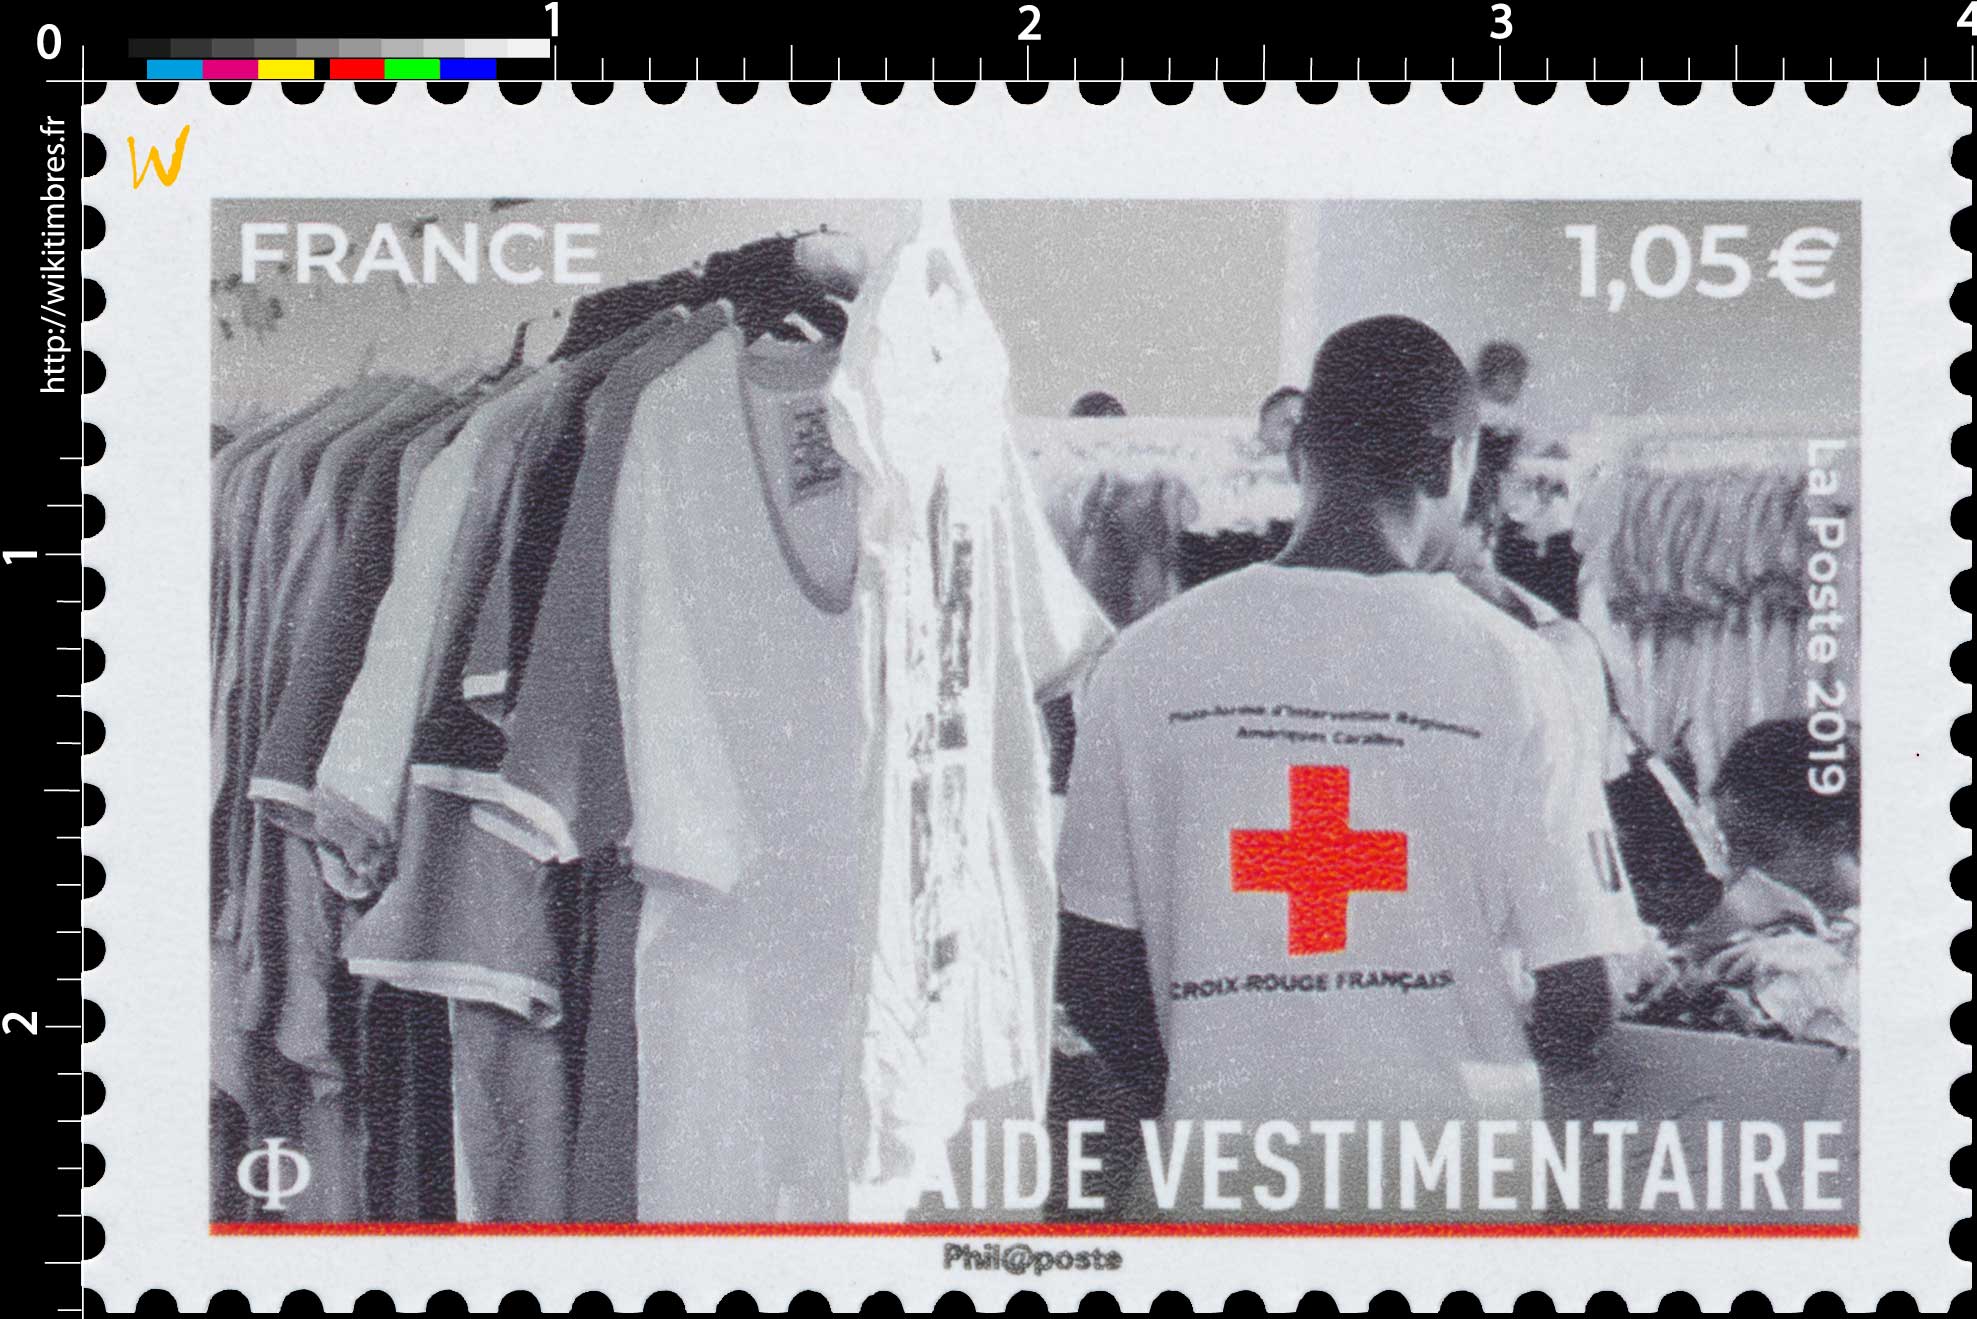 2019 Croix-Rouge française - AIDE VESTIMENTAIRE